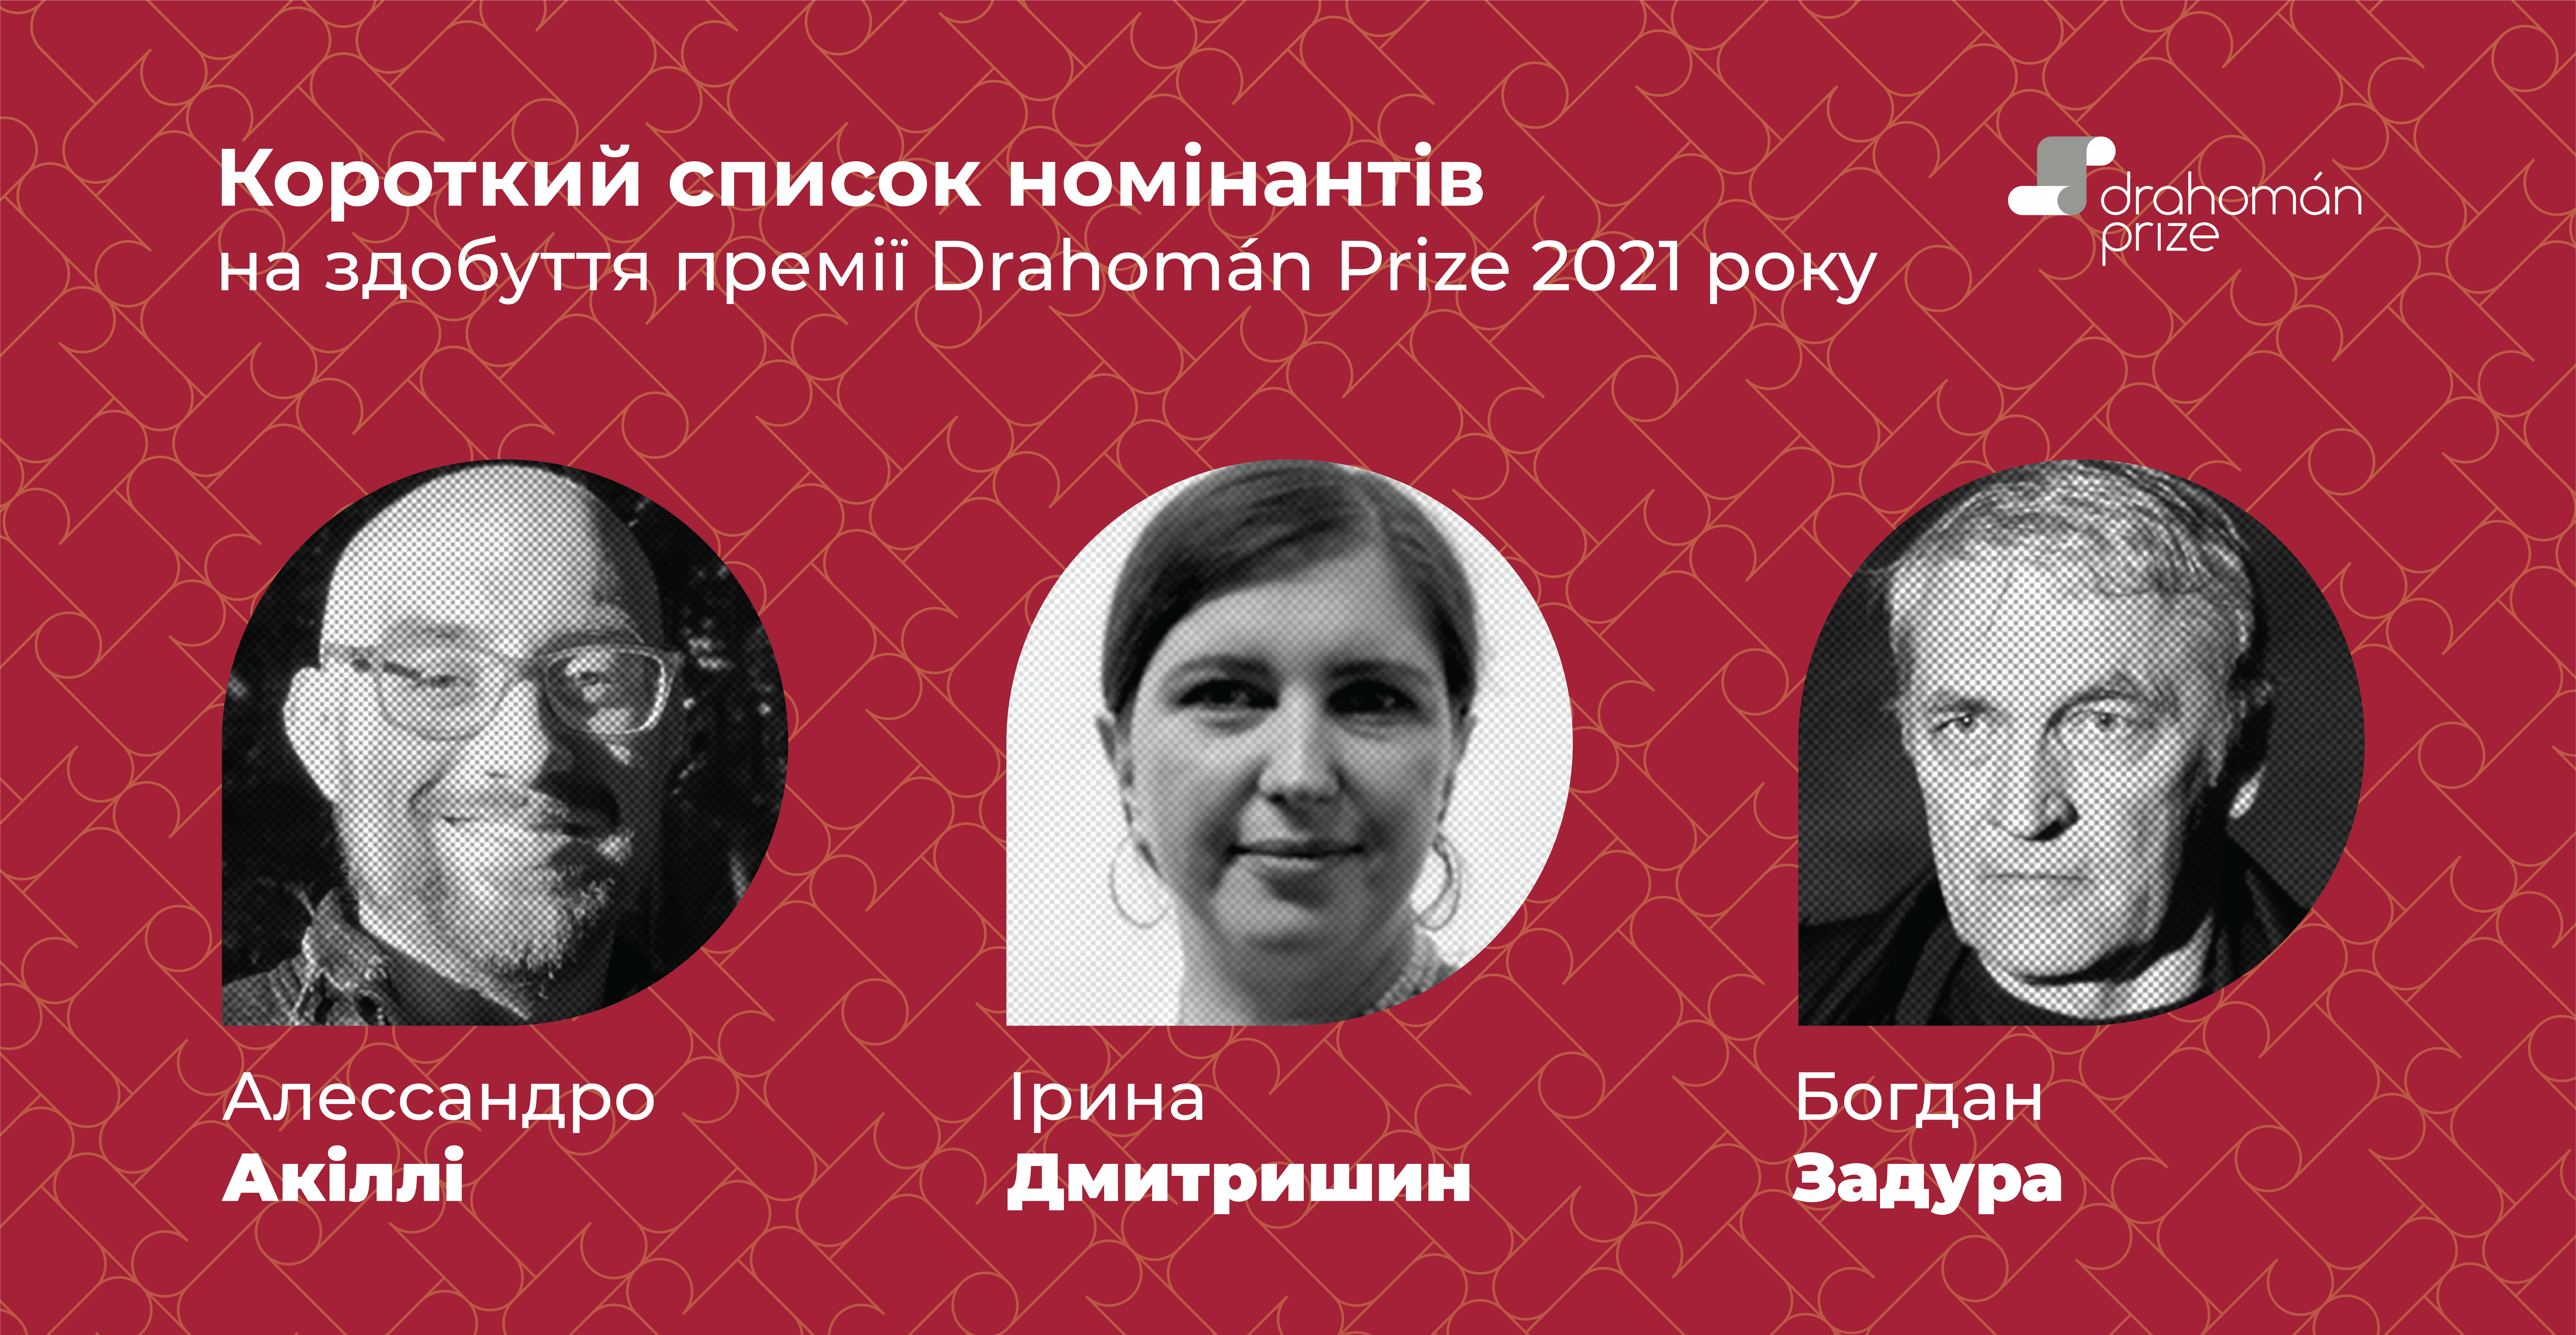 Drahomán Prize